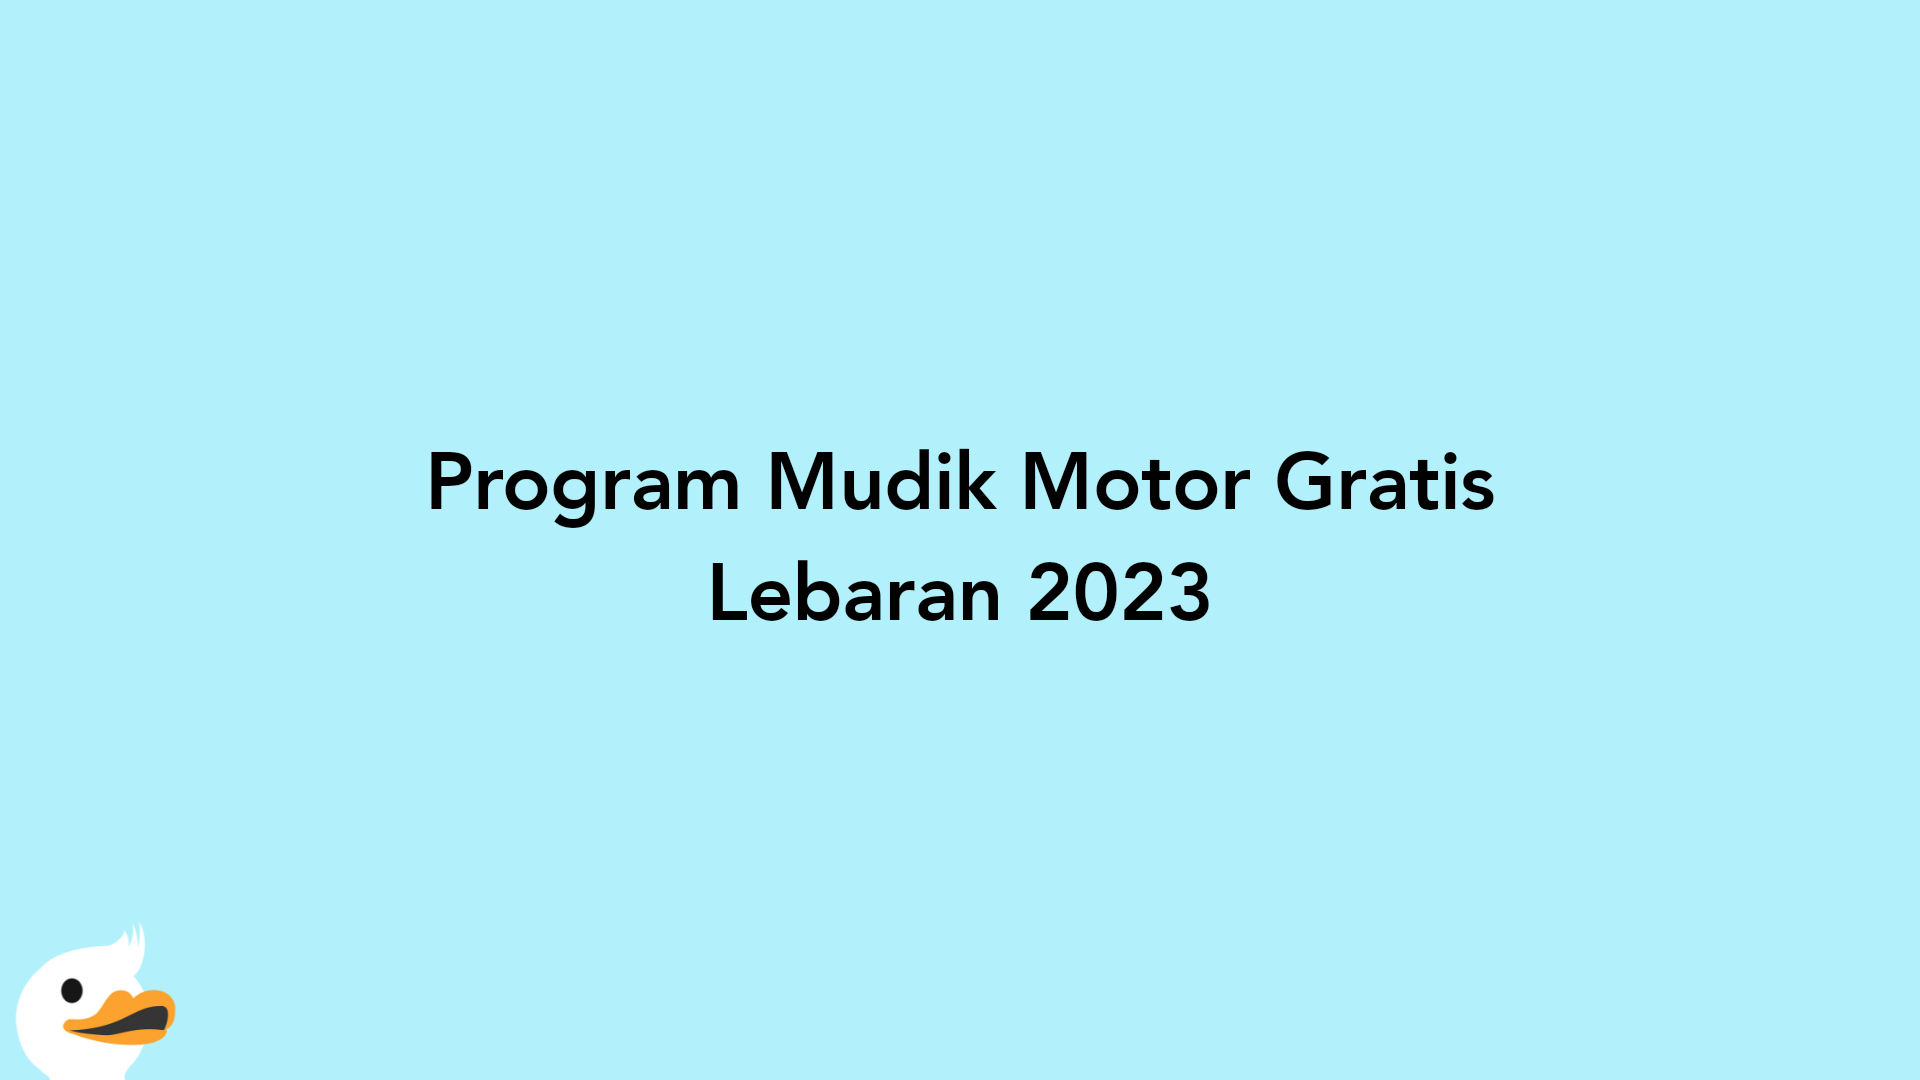 Program Mudik Motor Gratis Lebaran 2023